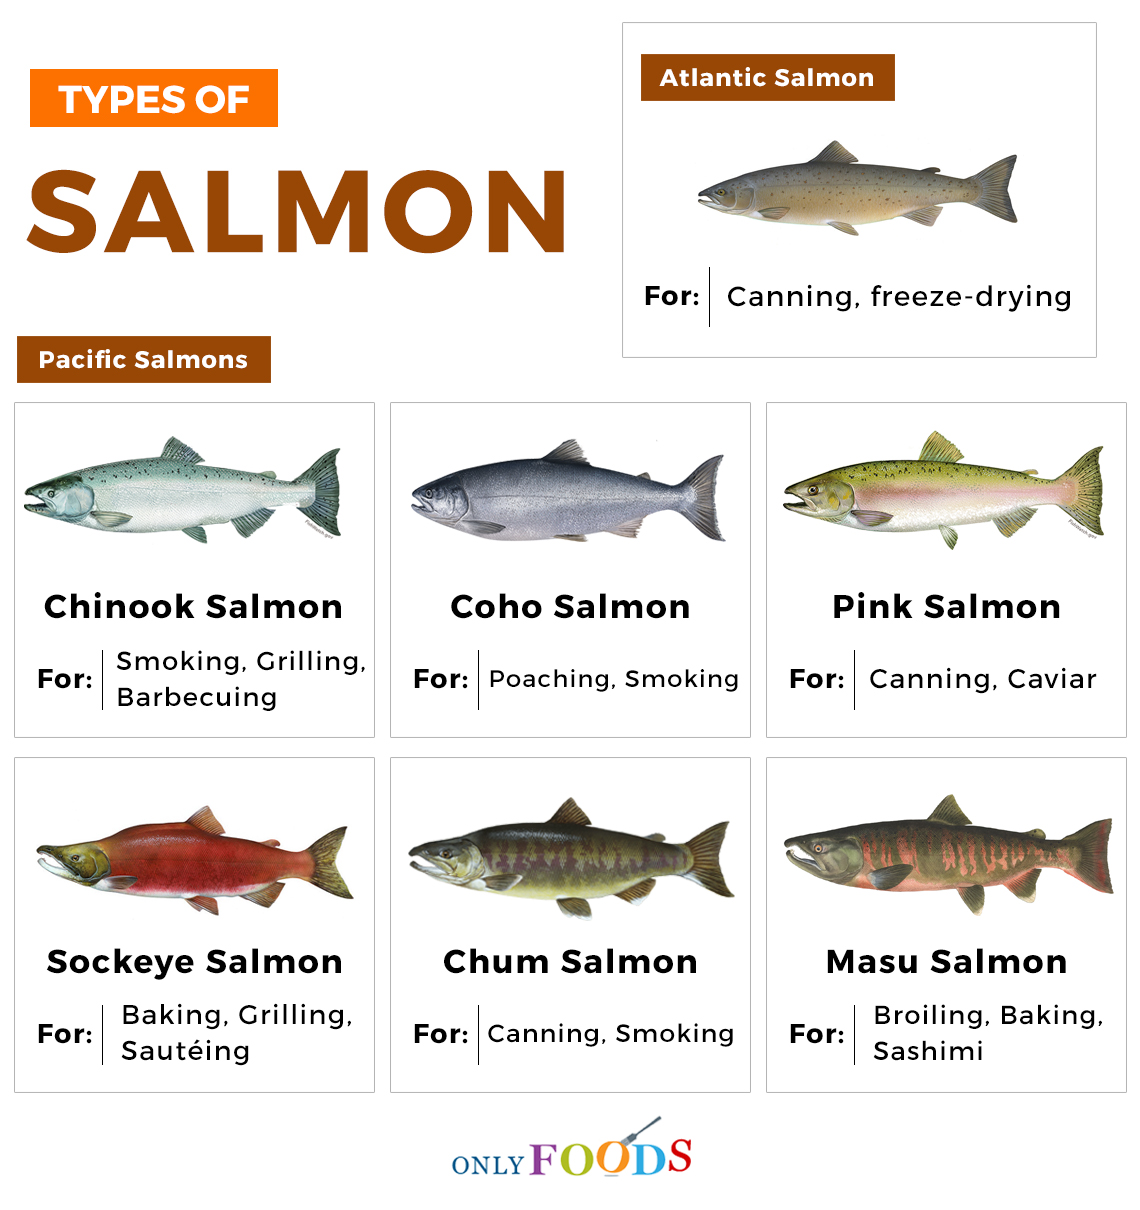 Species: Salmon